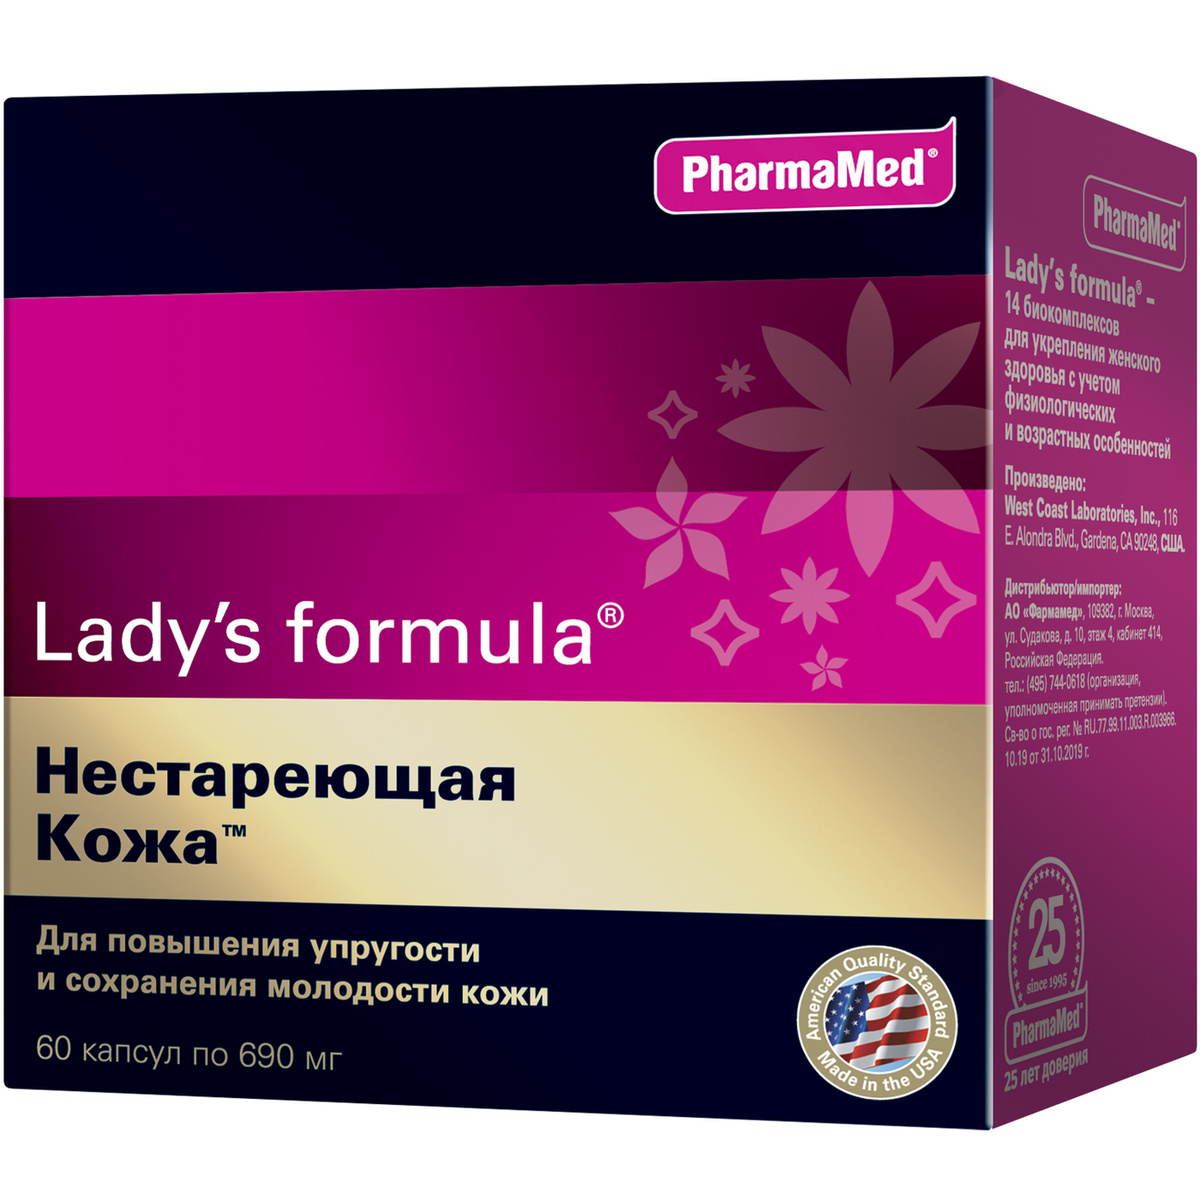 Lady formula 30